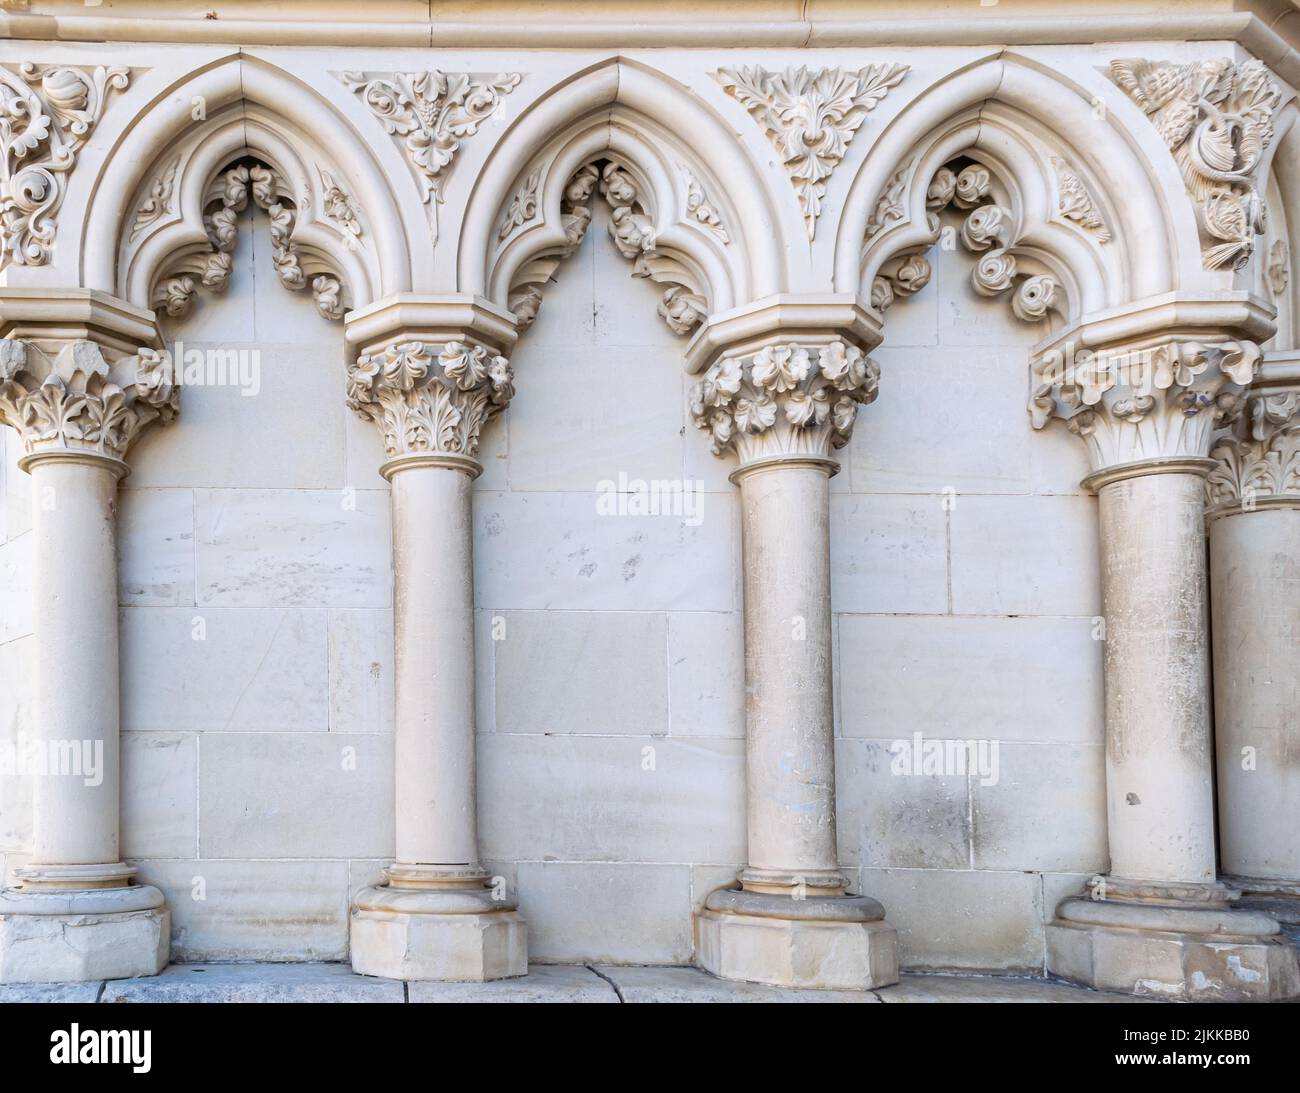 Columnas y ornamento floral en la fachada de la catedral gótica de Cuenca, España Stock Photo